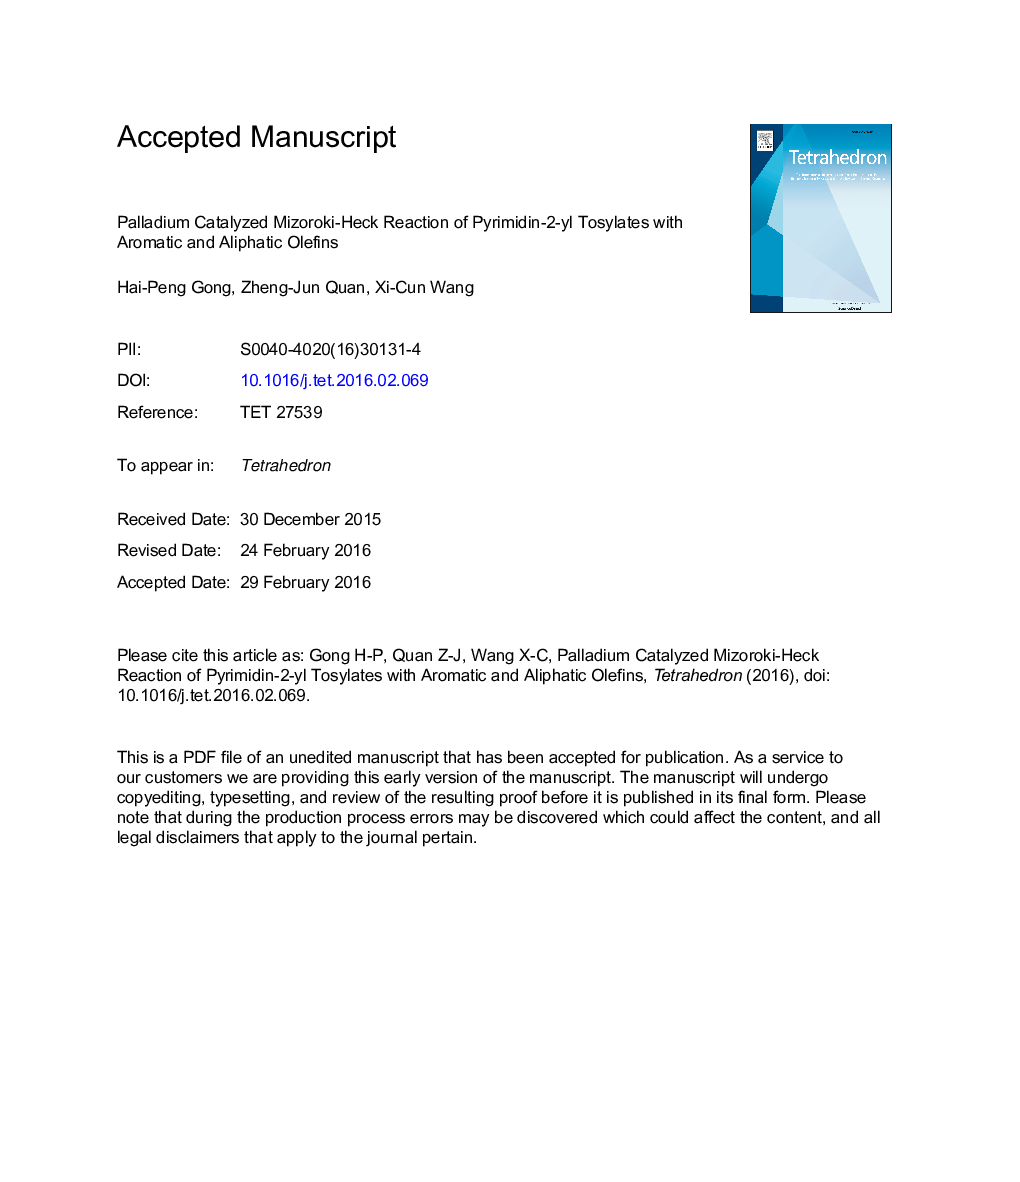 پالادیوم کاتالیز واکنش میزوروکی-هک پیریمیدین-2-ییل تیسیلات با الیفین های معطر و آلیفاتیک